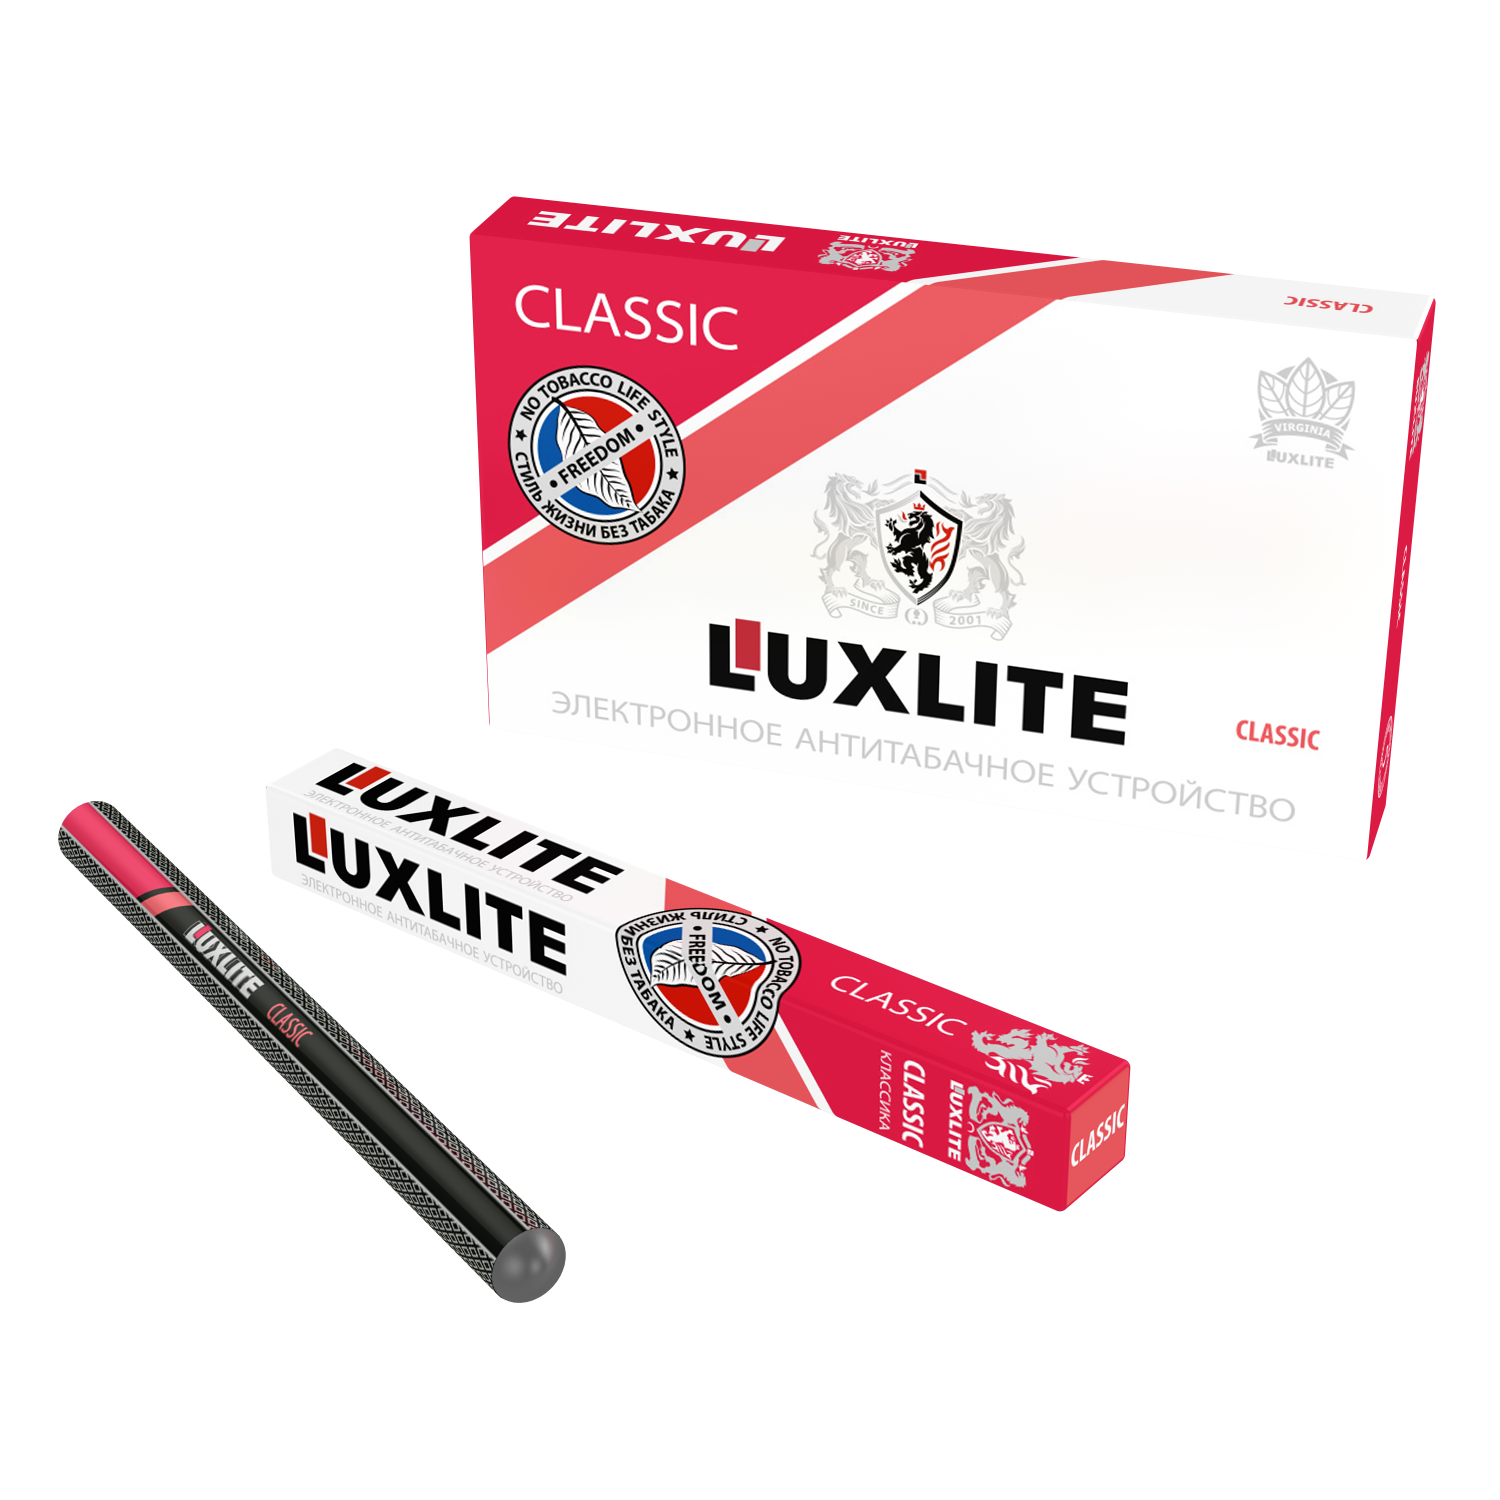 Одноразки сигареты купить. Одноразовые электронные сигареты Люкслайт. Электронная сигарета Luxlite Classic. Одноразовые сигареты Luxlite. Luxlite электронные сигареты без никотина.